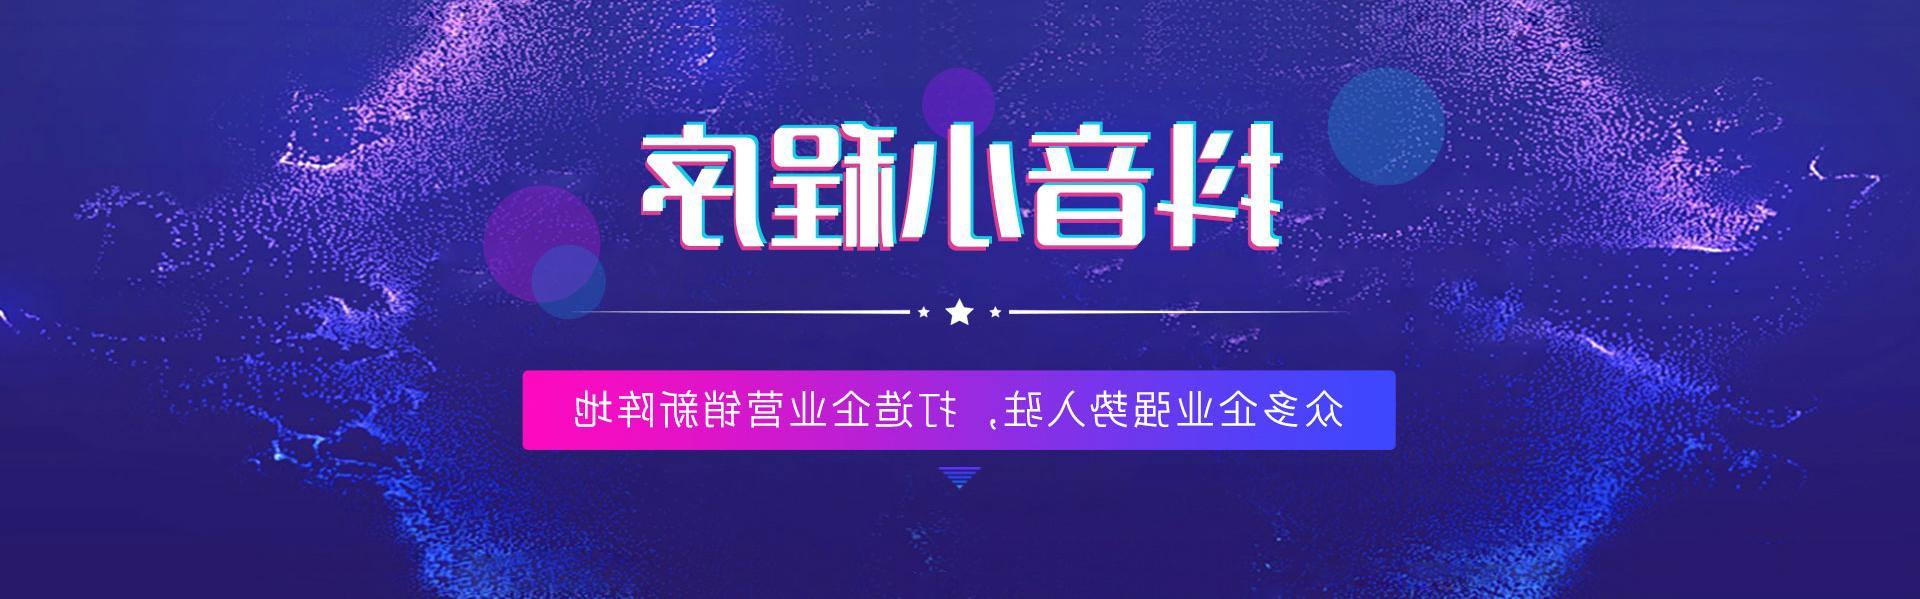 徐州抖音全球网络赌博平台,打造企业营销新阵地